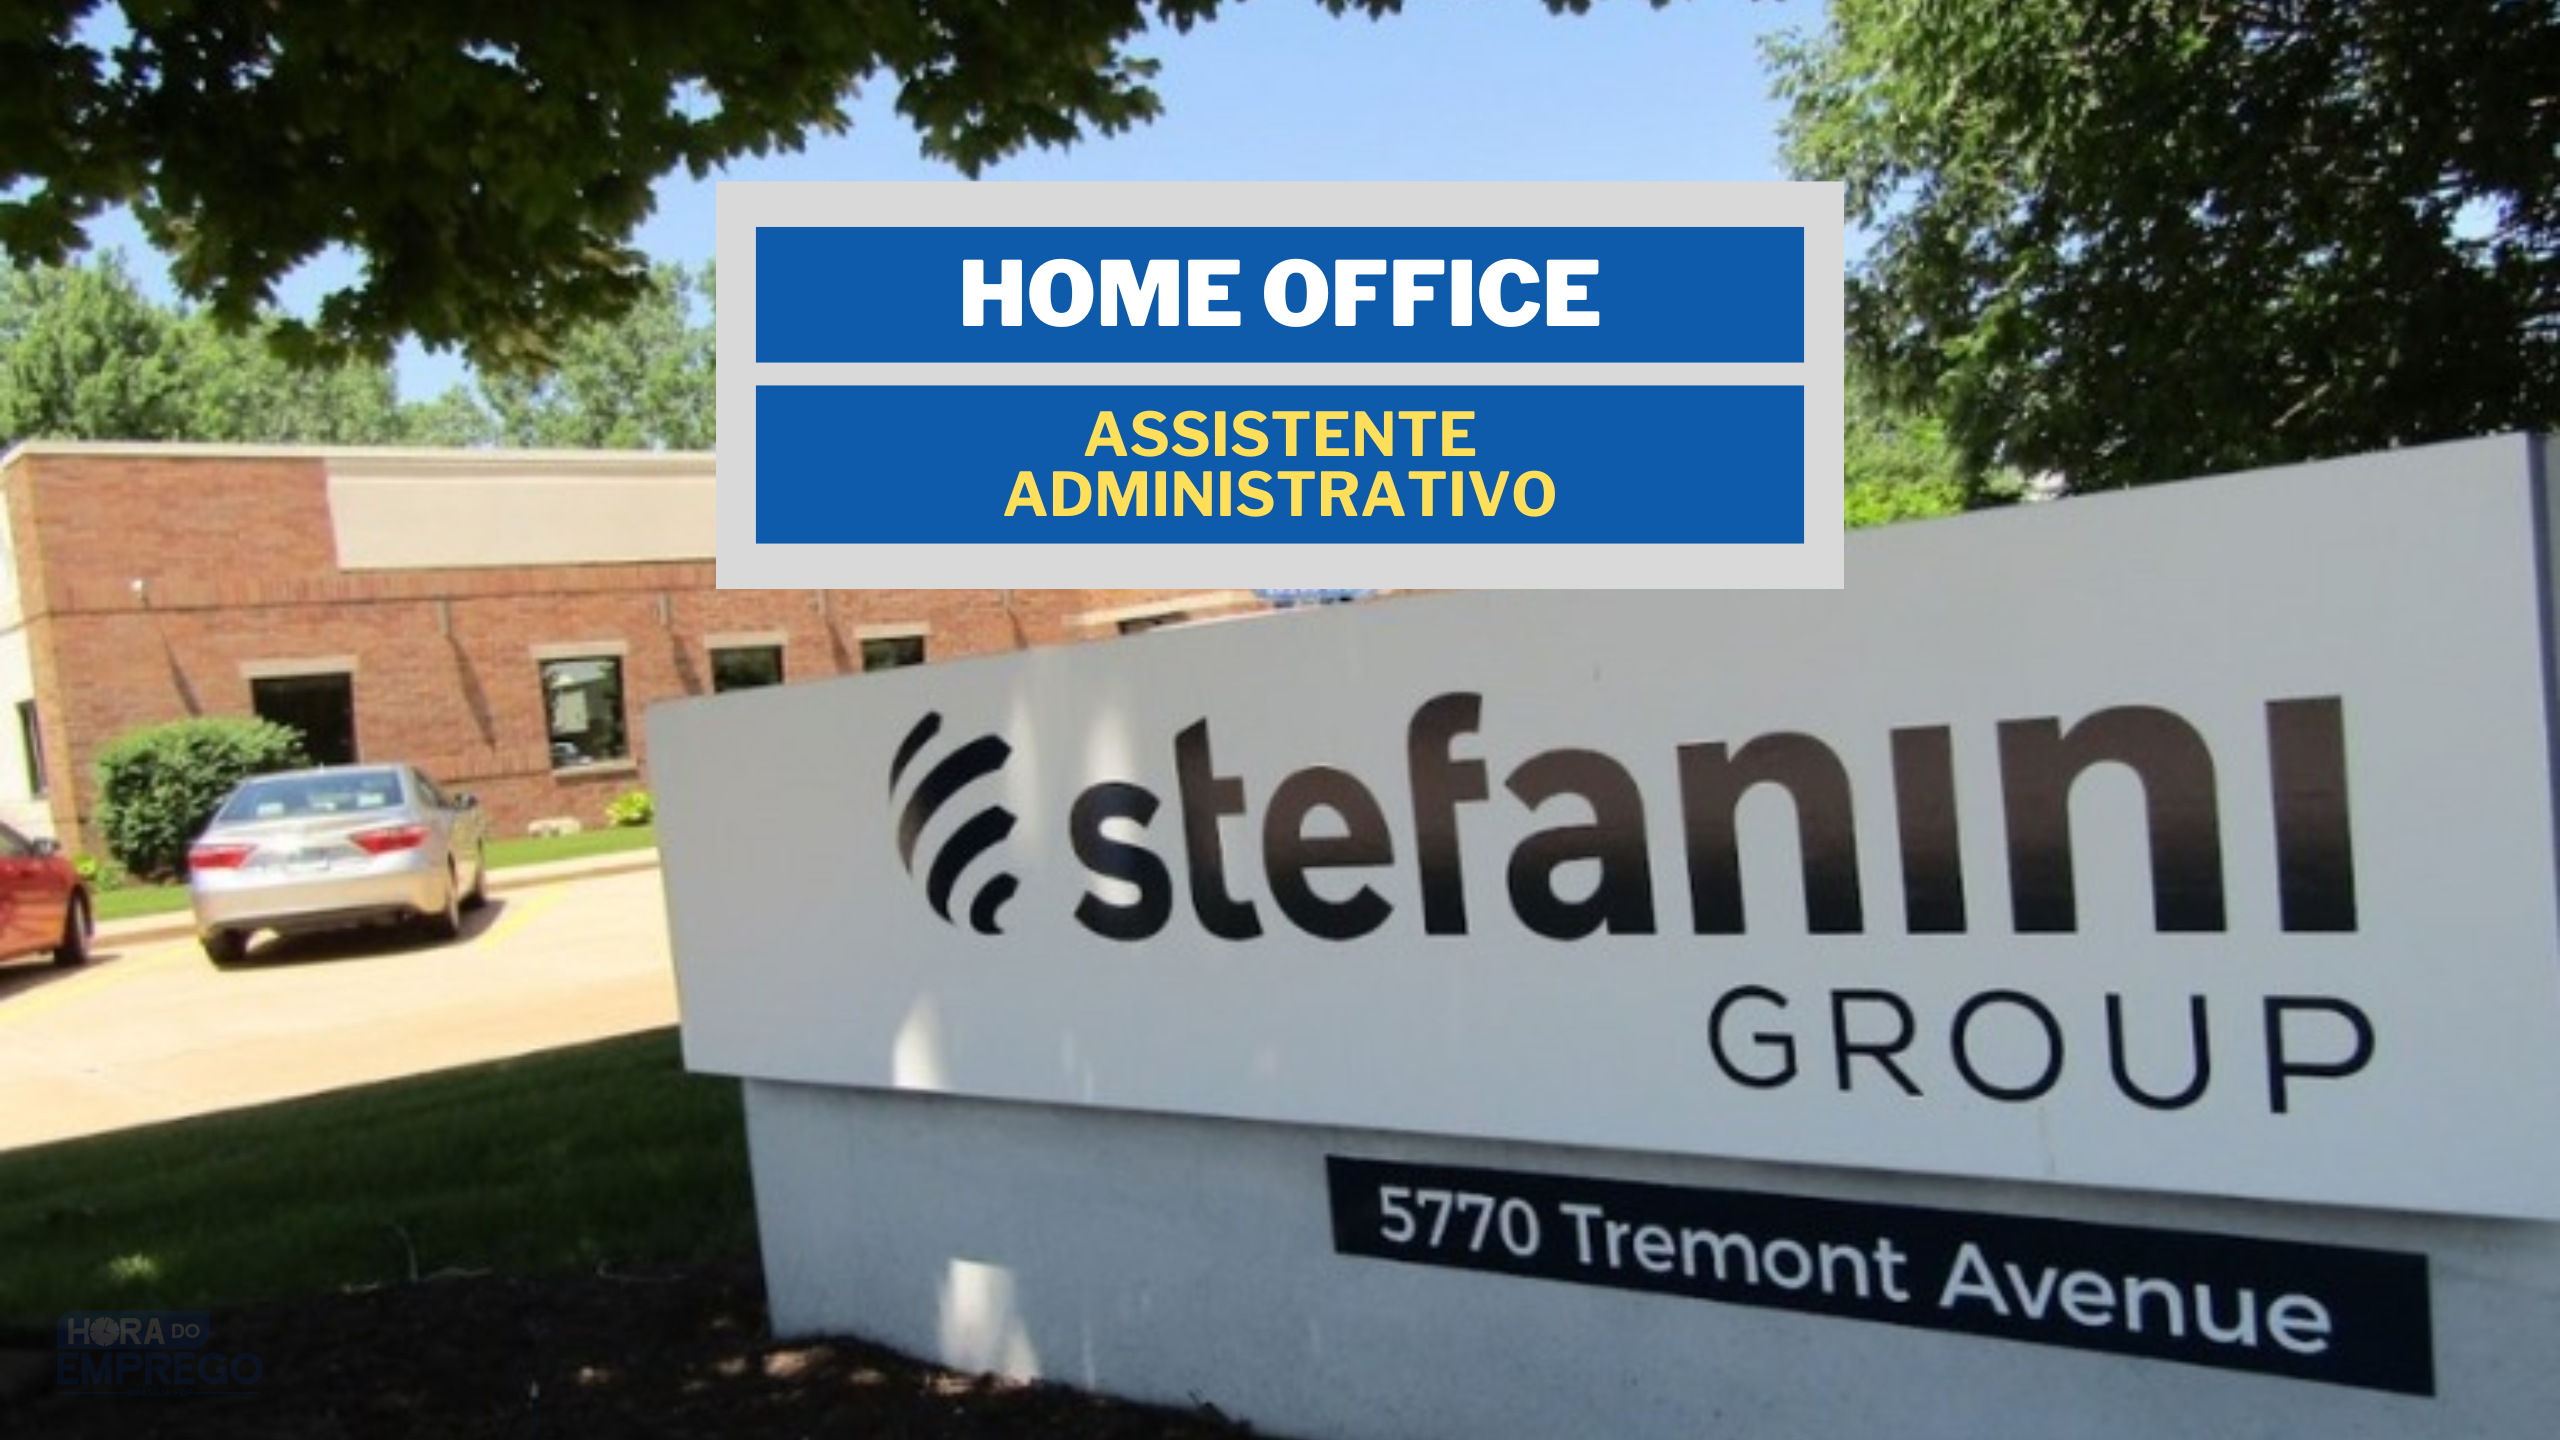 Trabalhe de Casa! Stefanini Group abre vagas 100% HOME OFFICE para Assistente Administrativo Pleno